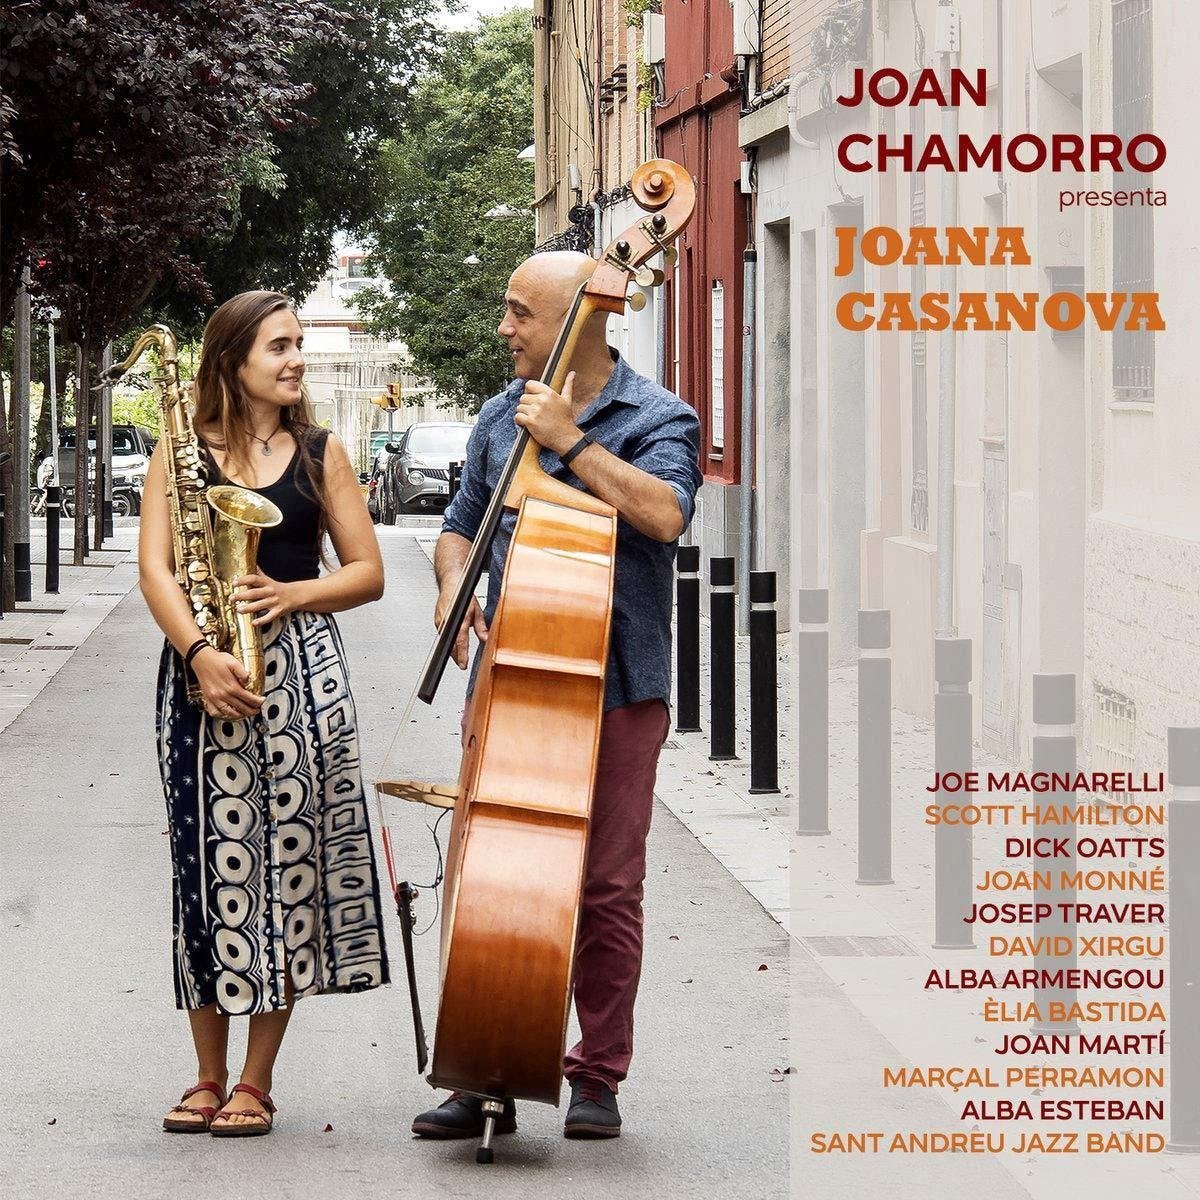 CD Shop - CHAMORRO, JOAN PRESENTA JOANA CASANOVA